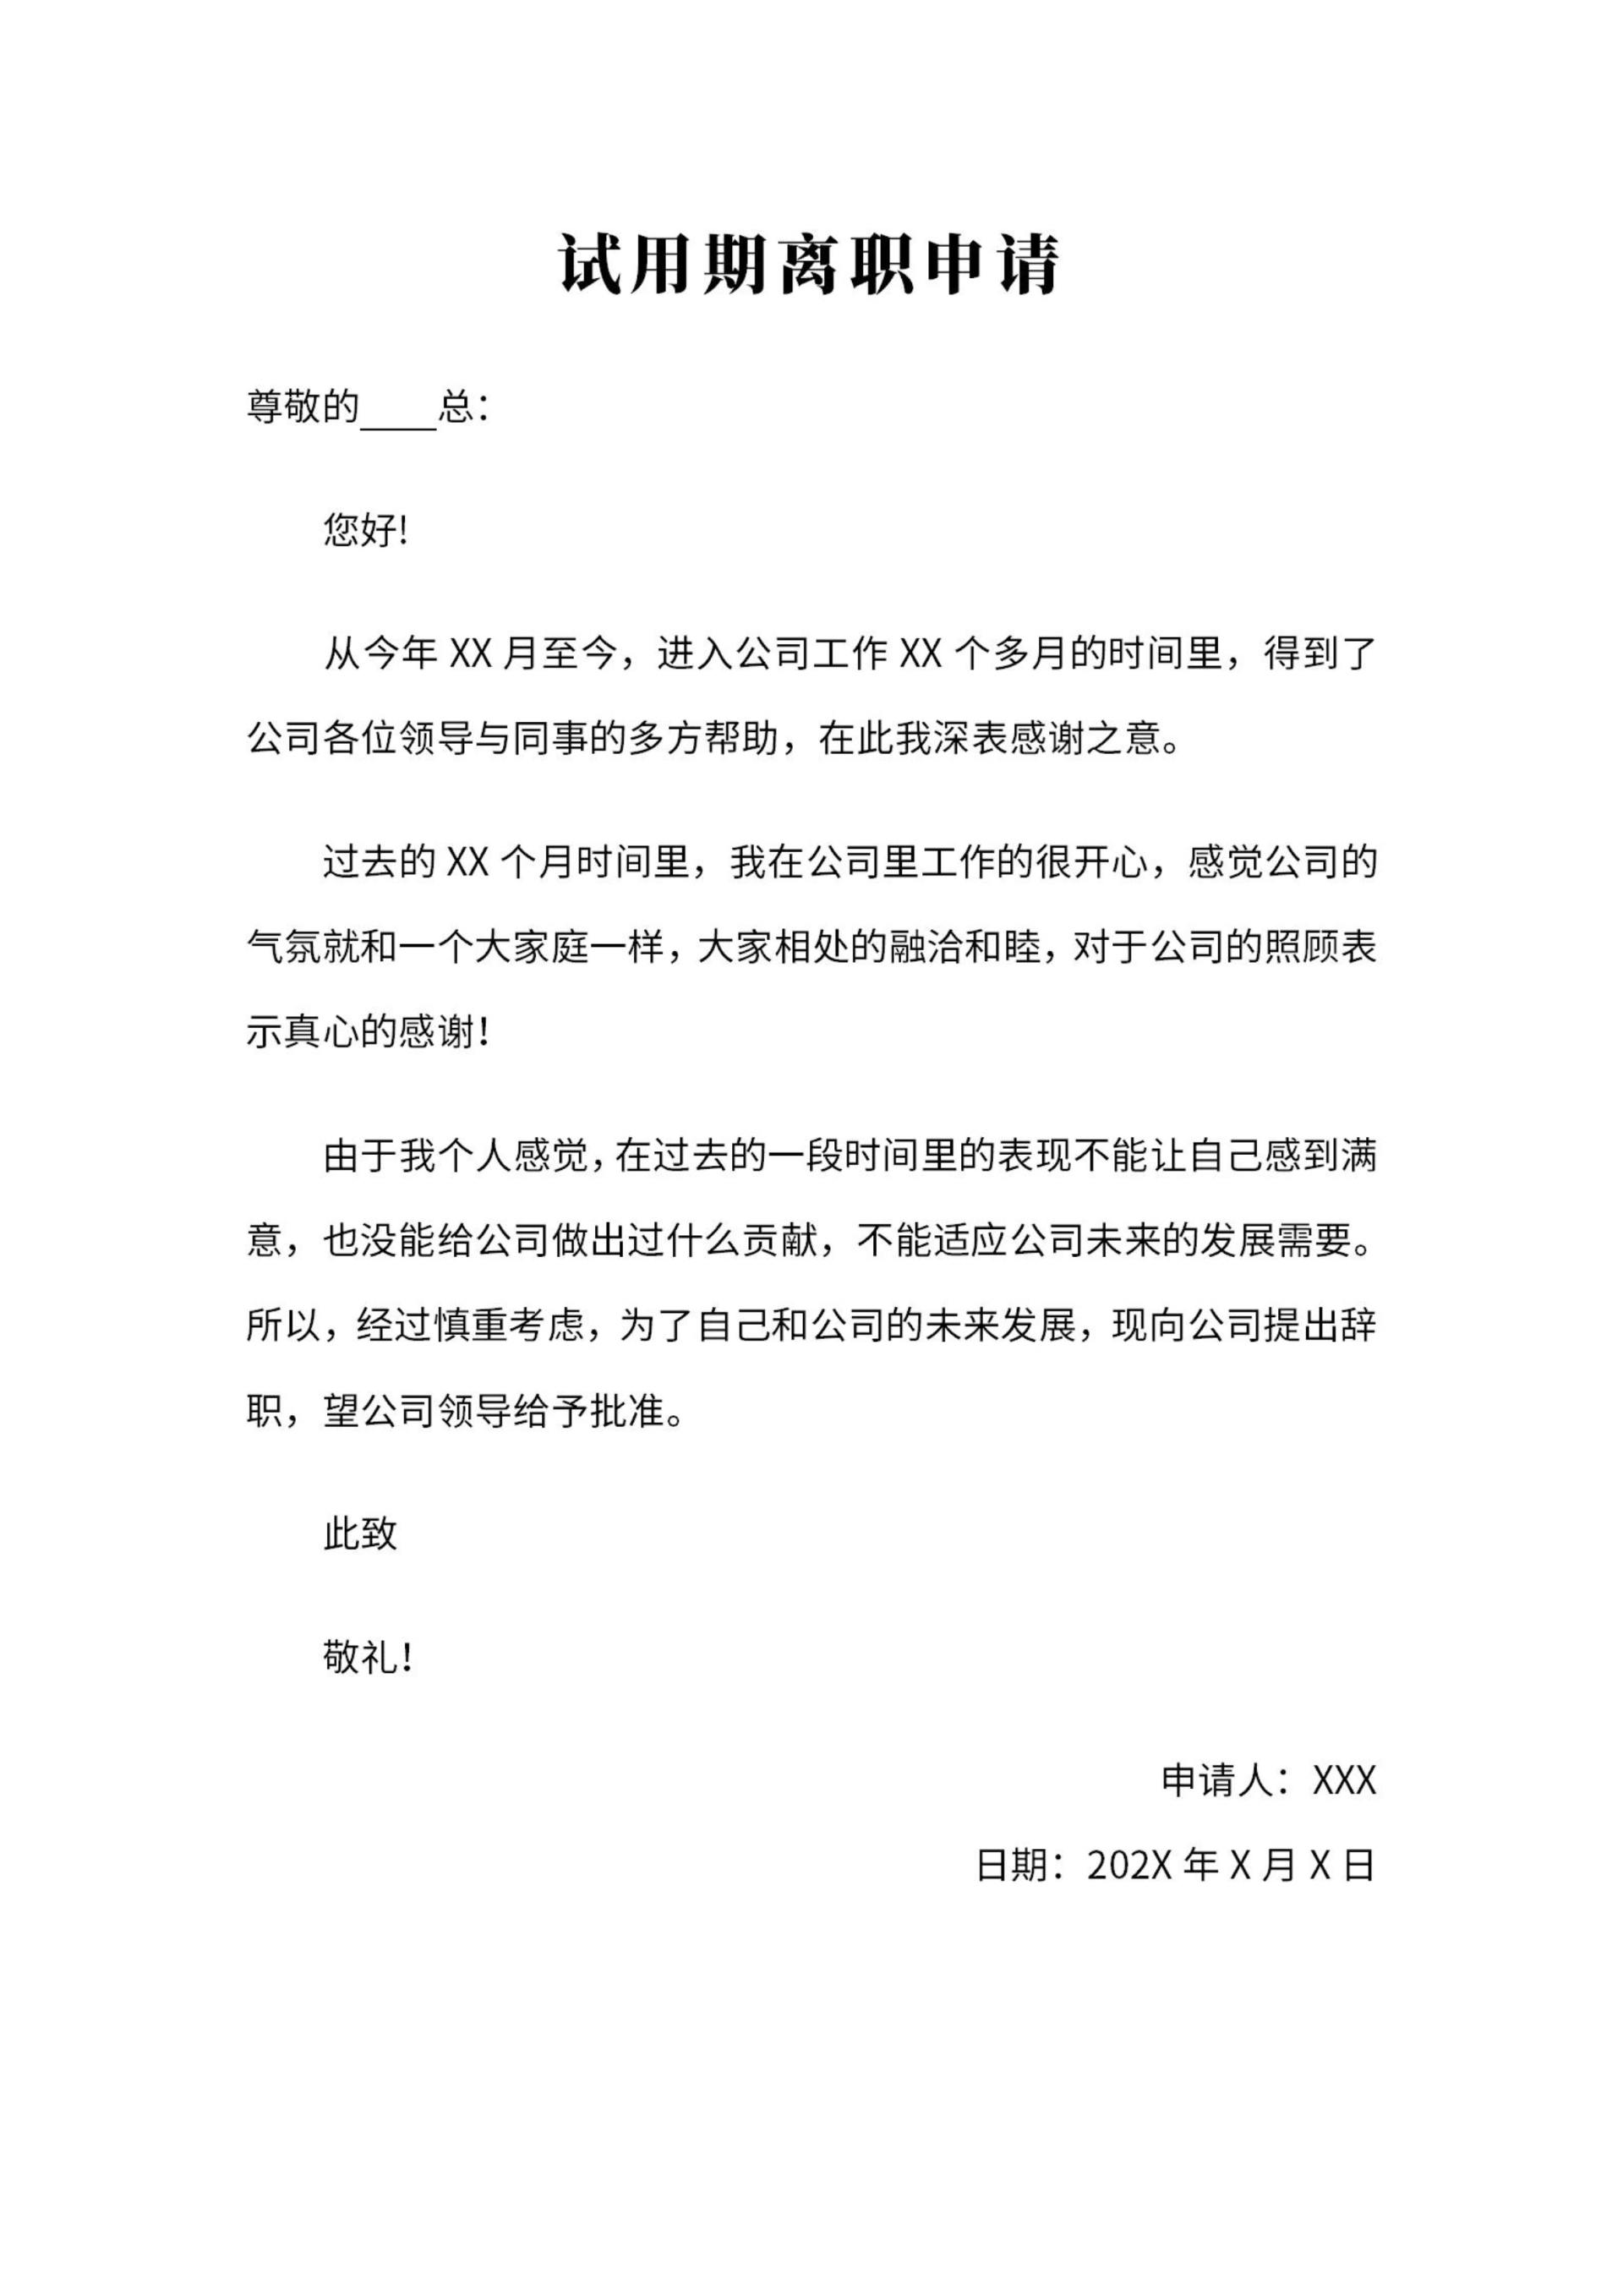 云南白药董事长因个人原因提出辞职_王明辉_公司_发布公告